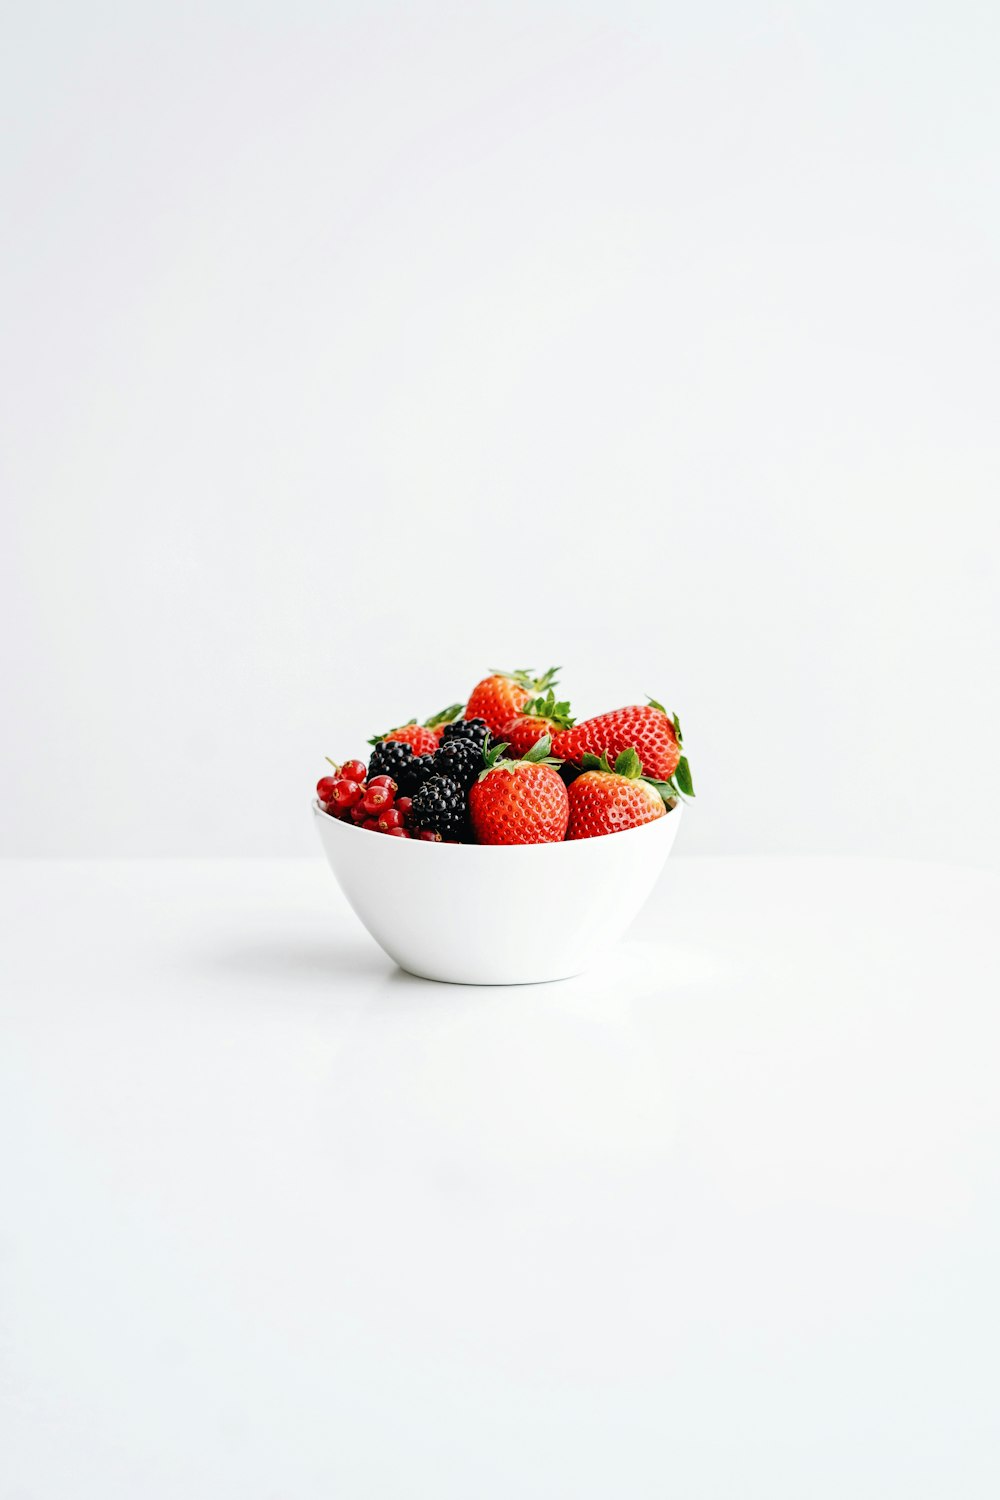 strawberries in white ceramic bowl